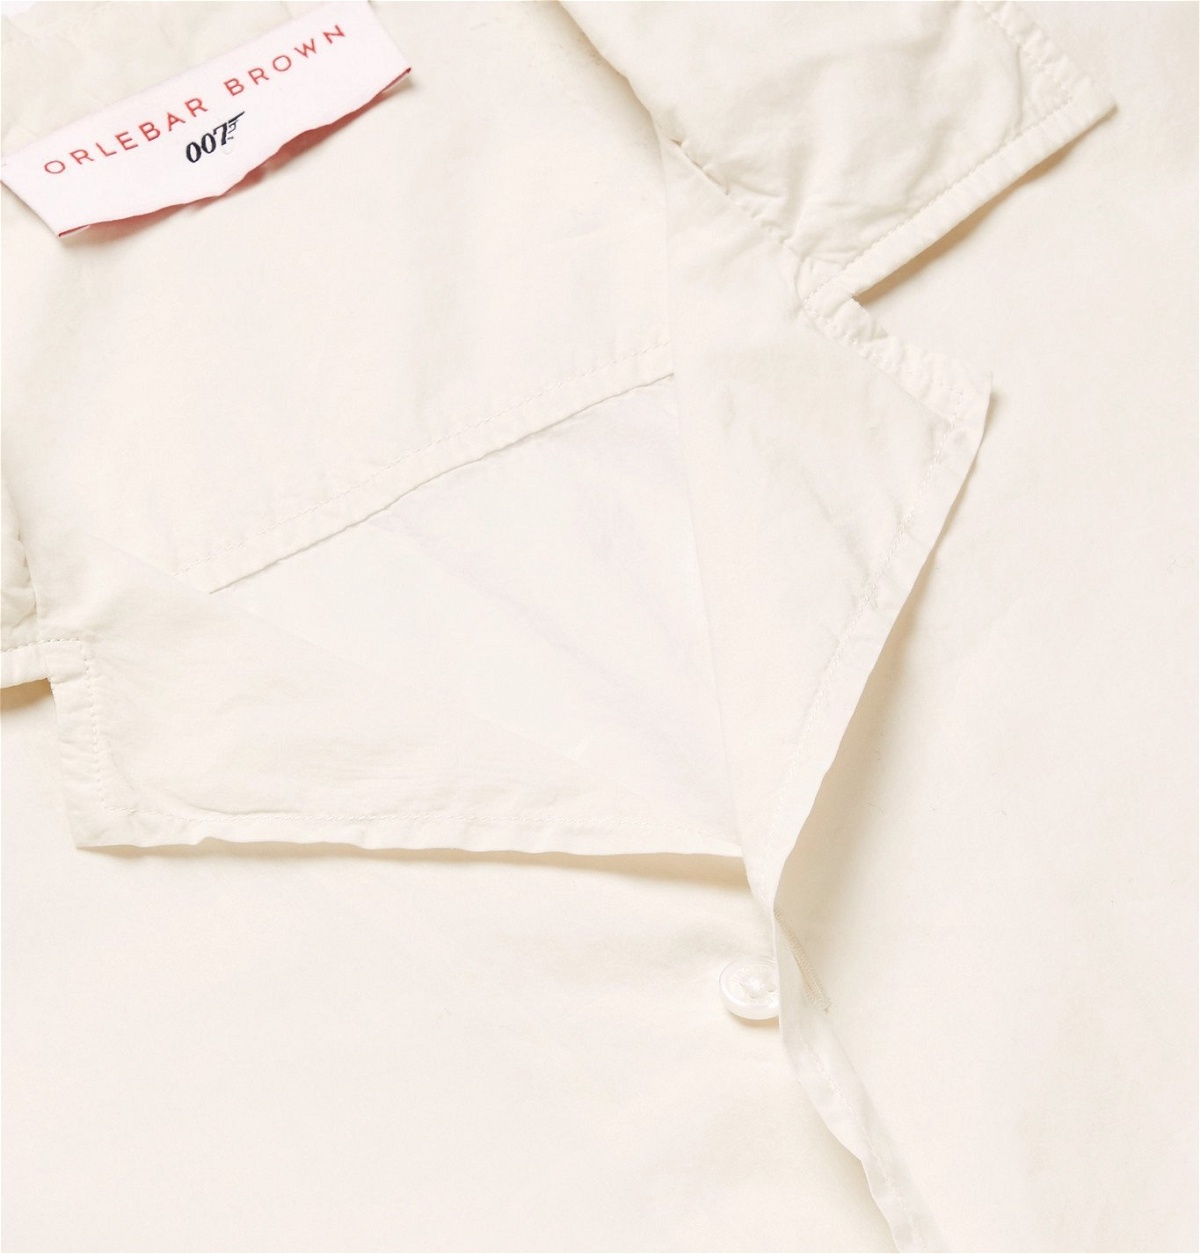 Orlebar Brown - 007 Golden Gun Camp-Collar Cotton Shirt - Neutrals ...